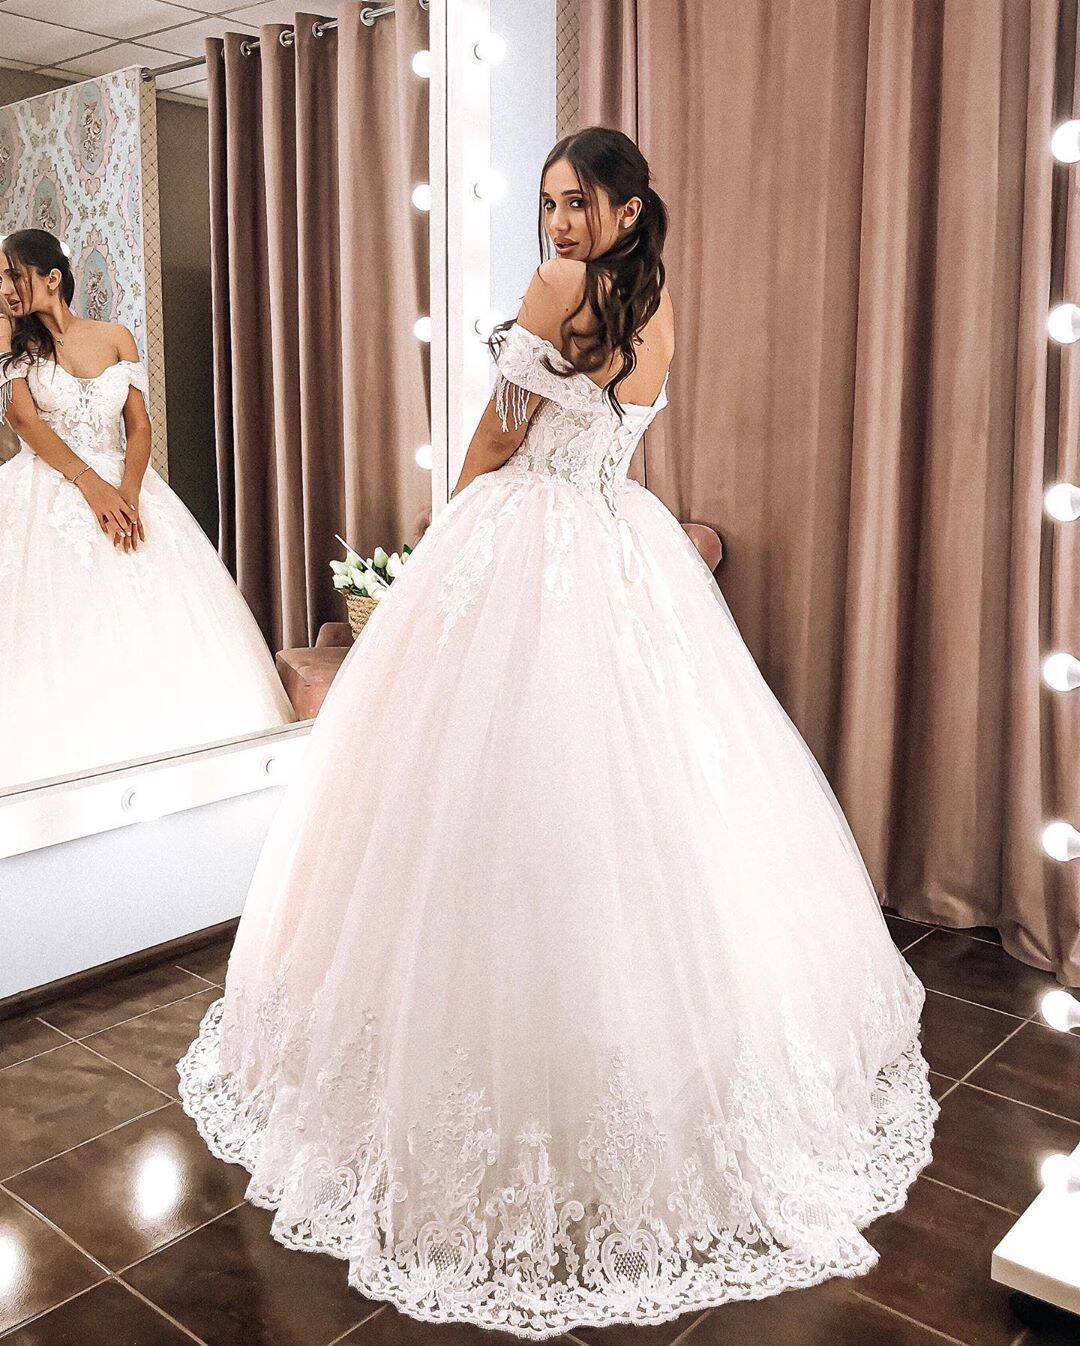 Даша Ульянова примерила свадебное платье